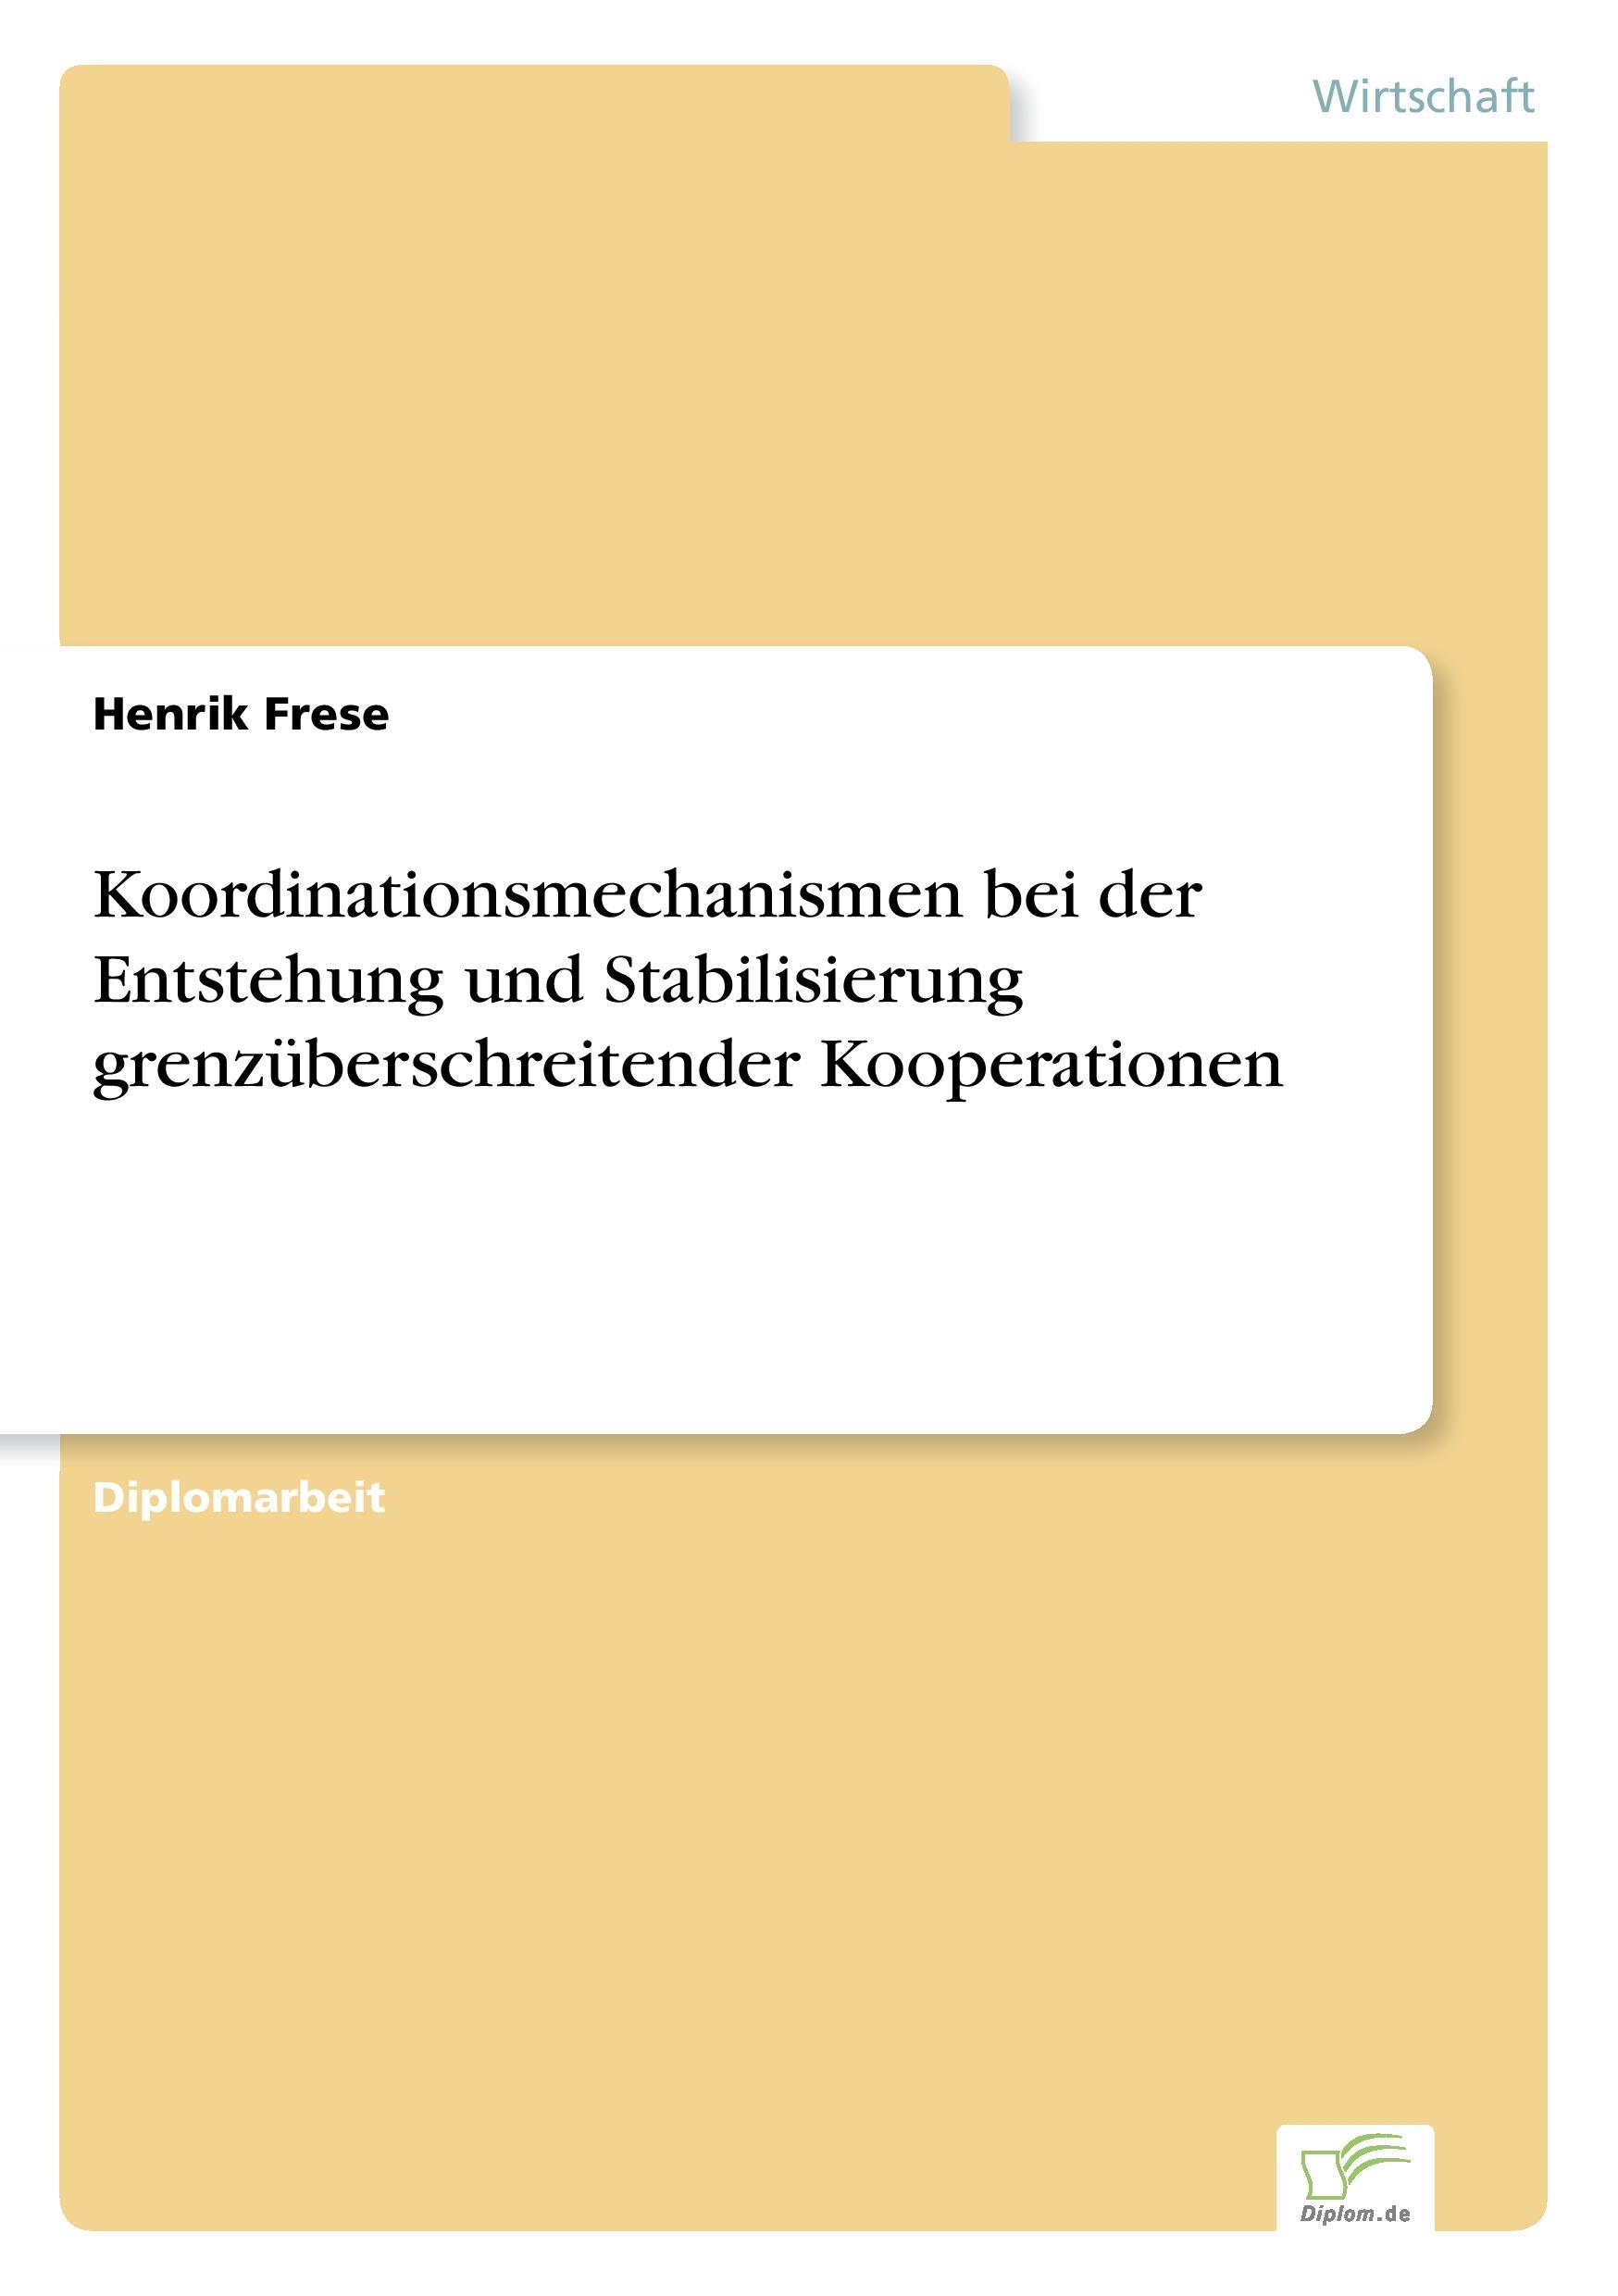 Koordinationsmechanismen bei der Entstehung und Stabilisierung grenzueberschreitender Kooperationen - Frese, Henrik